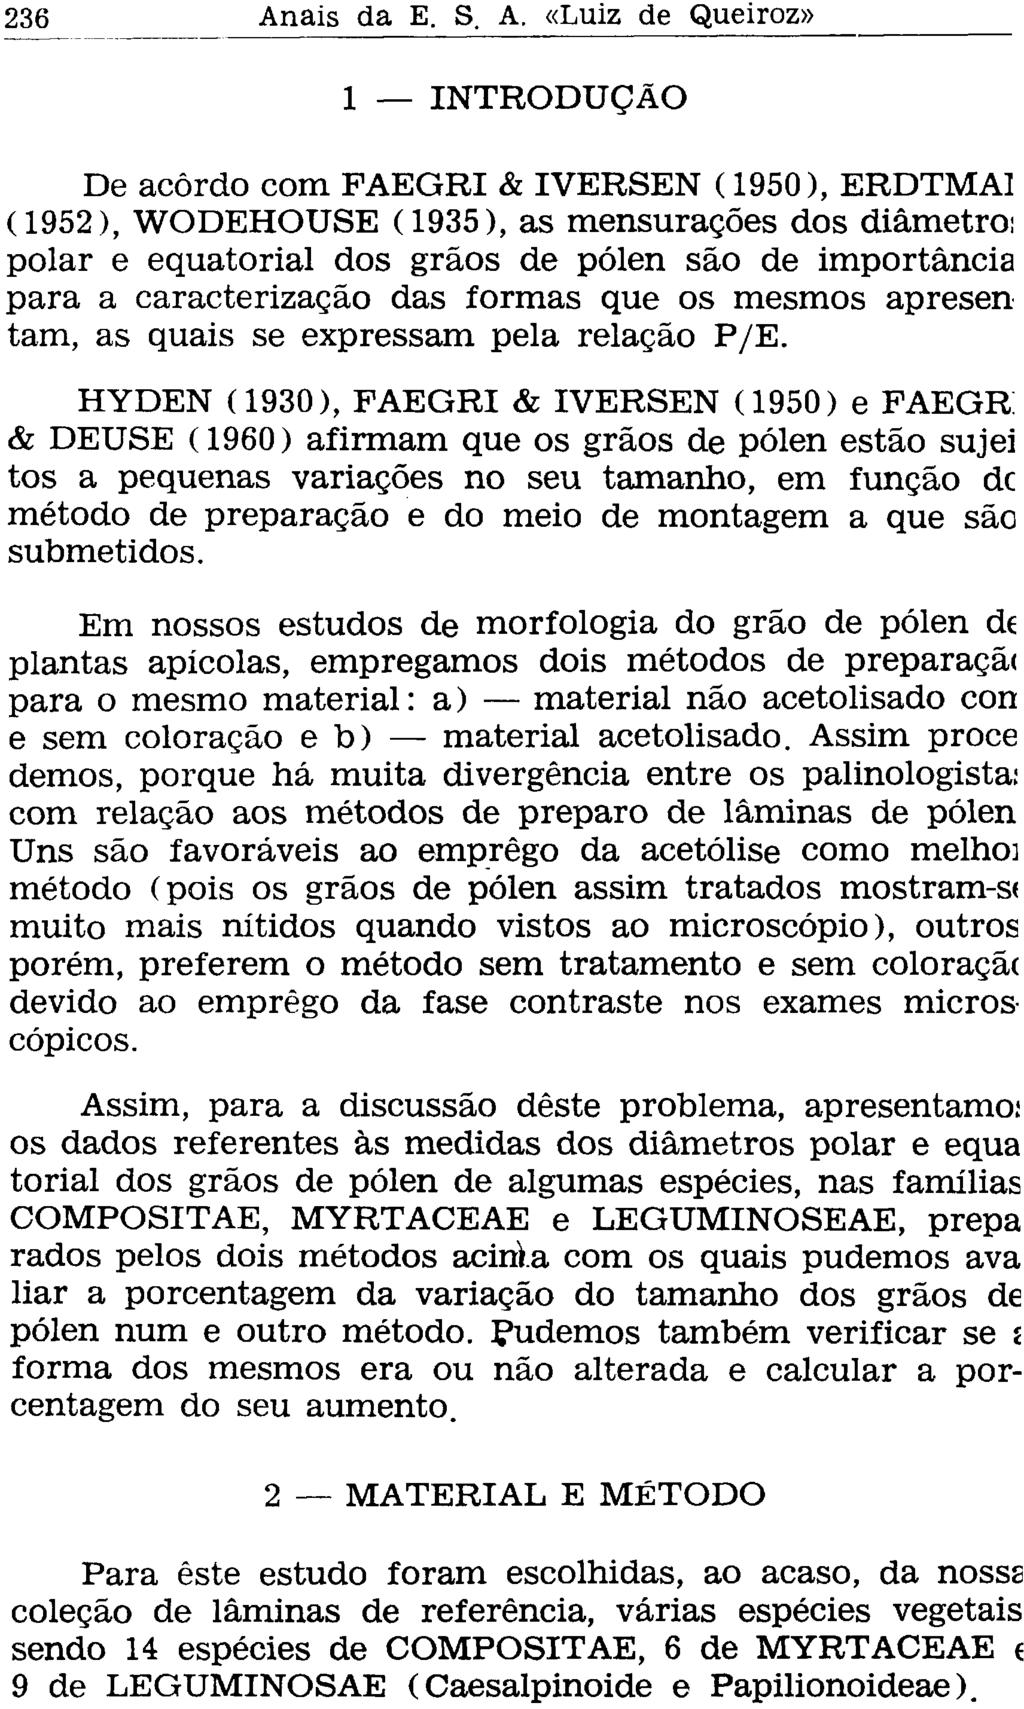 1 INTRODUÇÃO De acordo com FAEGRI & IVERSEN (1950), ERDTMAI (1952), WODEHOUSE (1935), as mensurações dos diâmetro: polar e equatorial dos grãos de pólen são de importância para a caracterização das